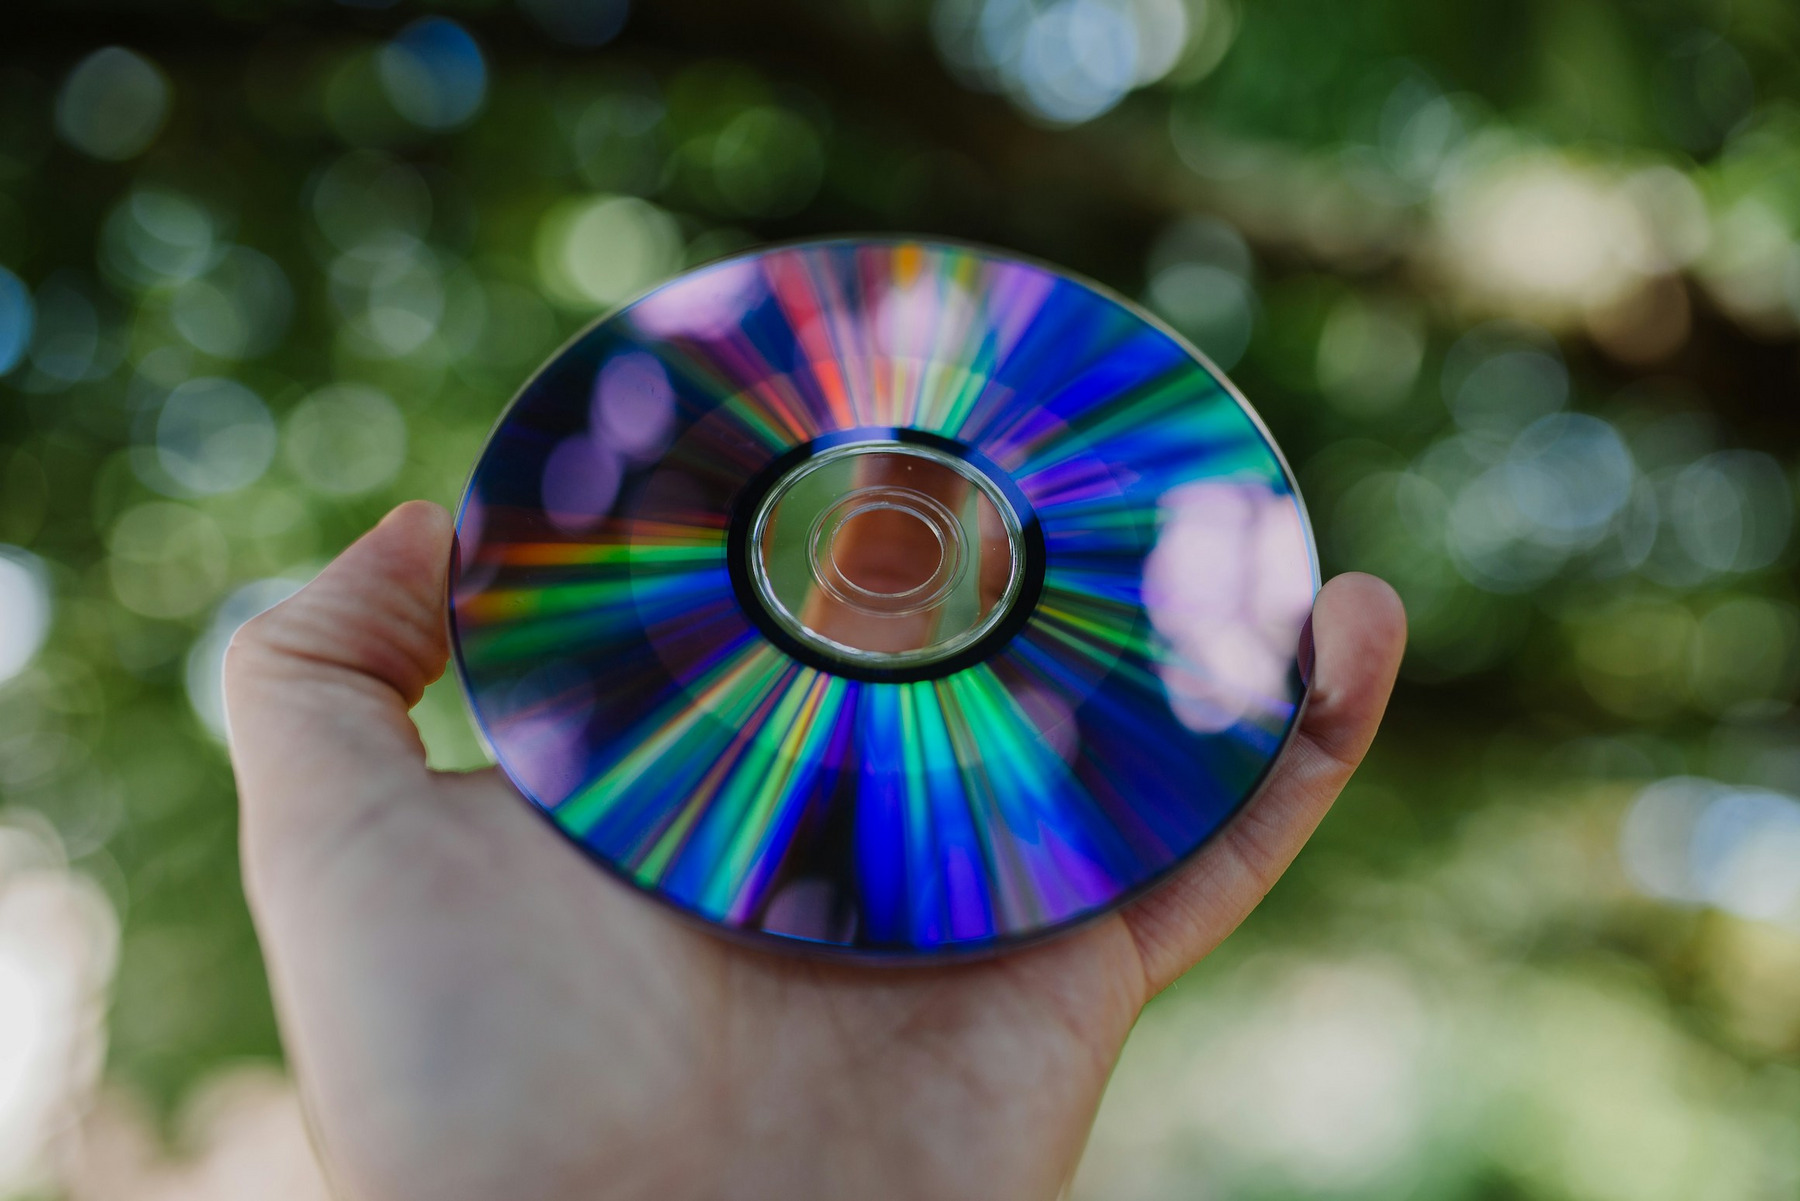 Eine Hand hält eine DVD, die das Sonnenlicht einfängt und bunte Regenbogenfarben reflektiert. Der Hintergrund ist unscharf und zeigt grüne, verschwommene Blätter, was auf eine Aufnahme im Freien hindeutet.